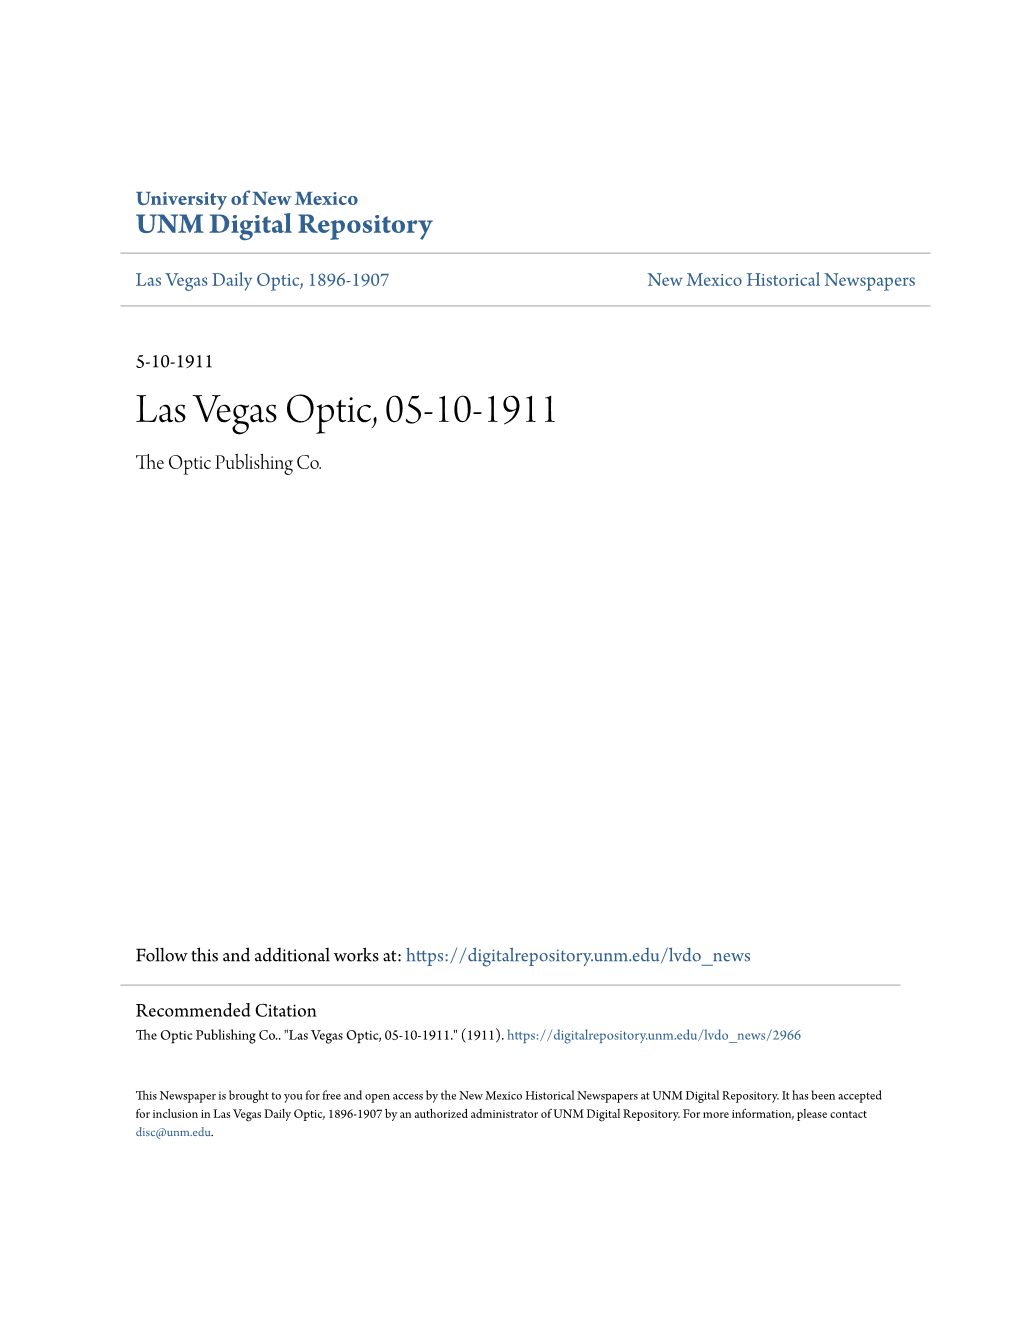 Las Vegas Optic, 05-10-1911 the Optic Publishing Co